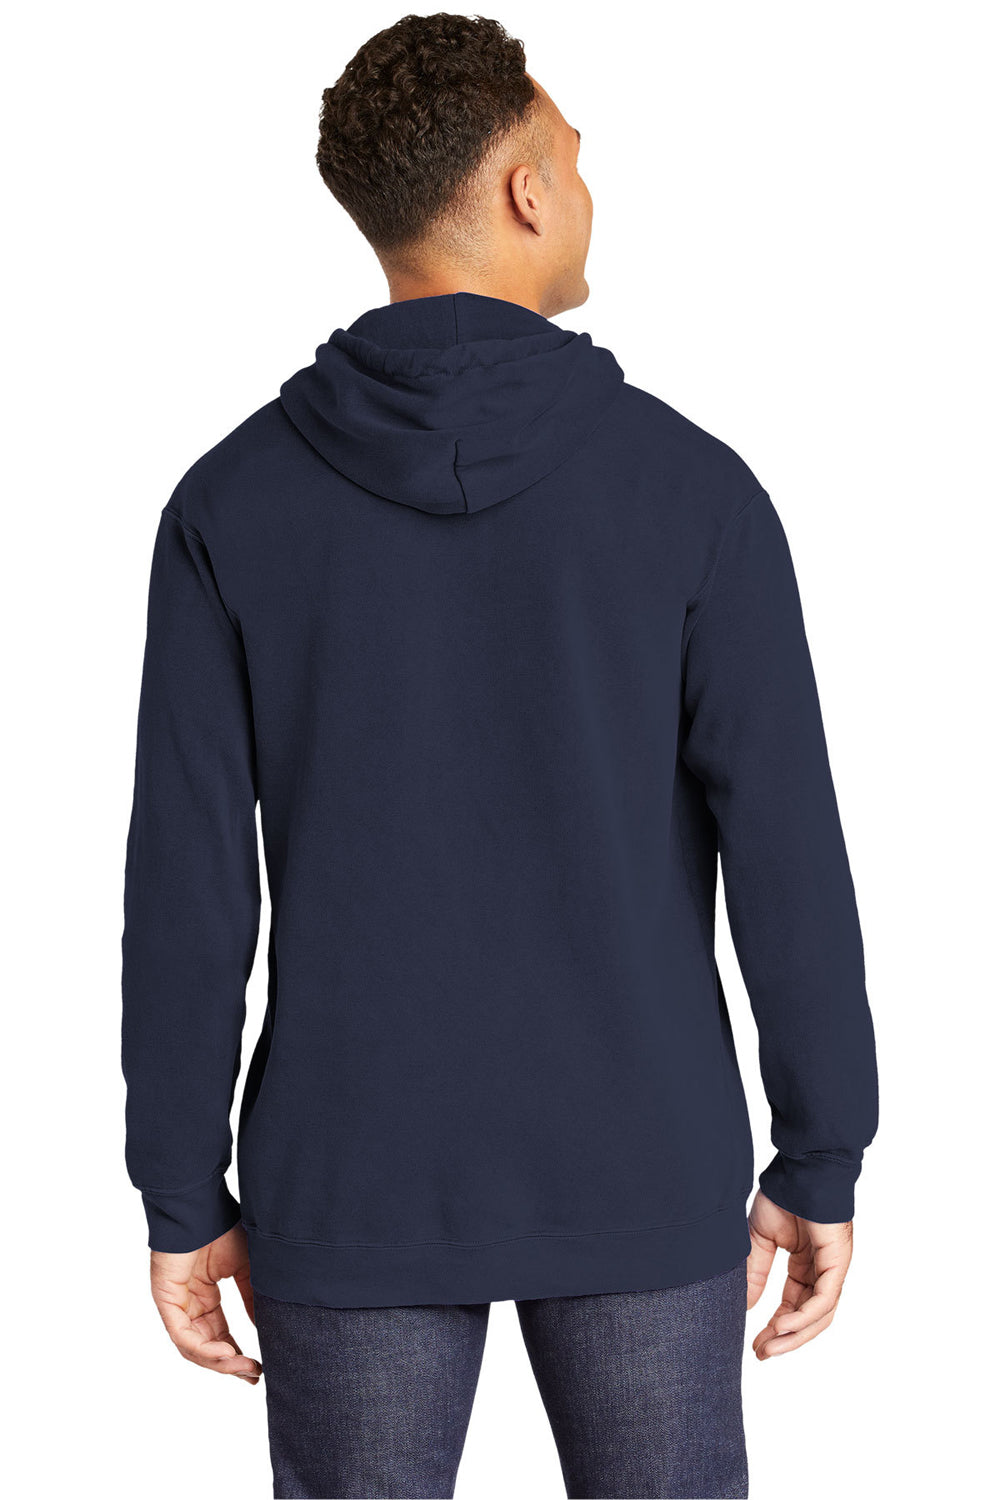 Comfort Colors 1567 Mens Hooded Sweatshirt Hoodie True Navy Blue Back